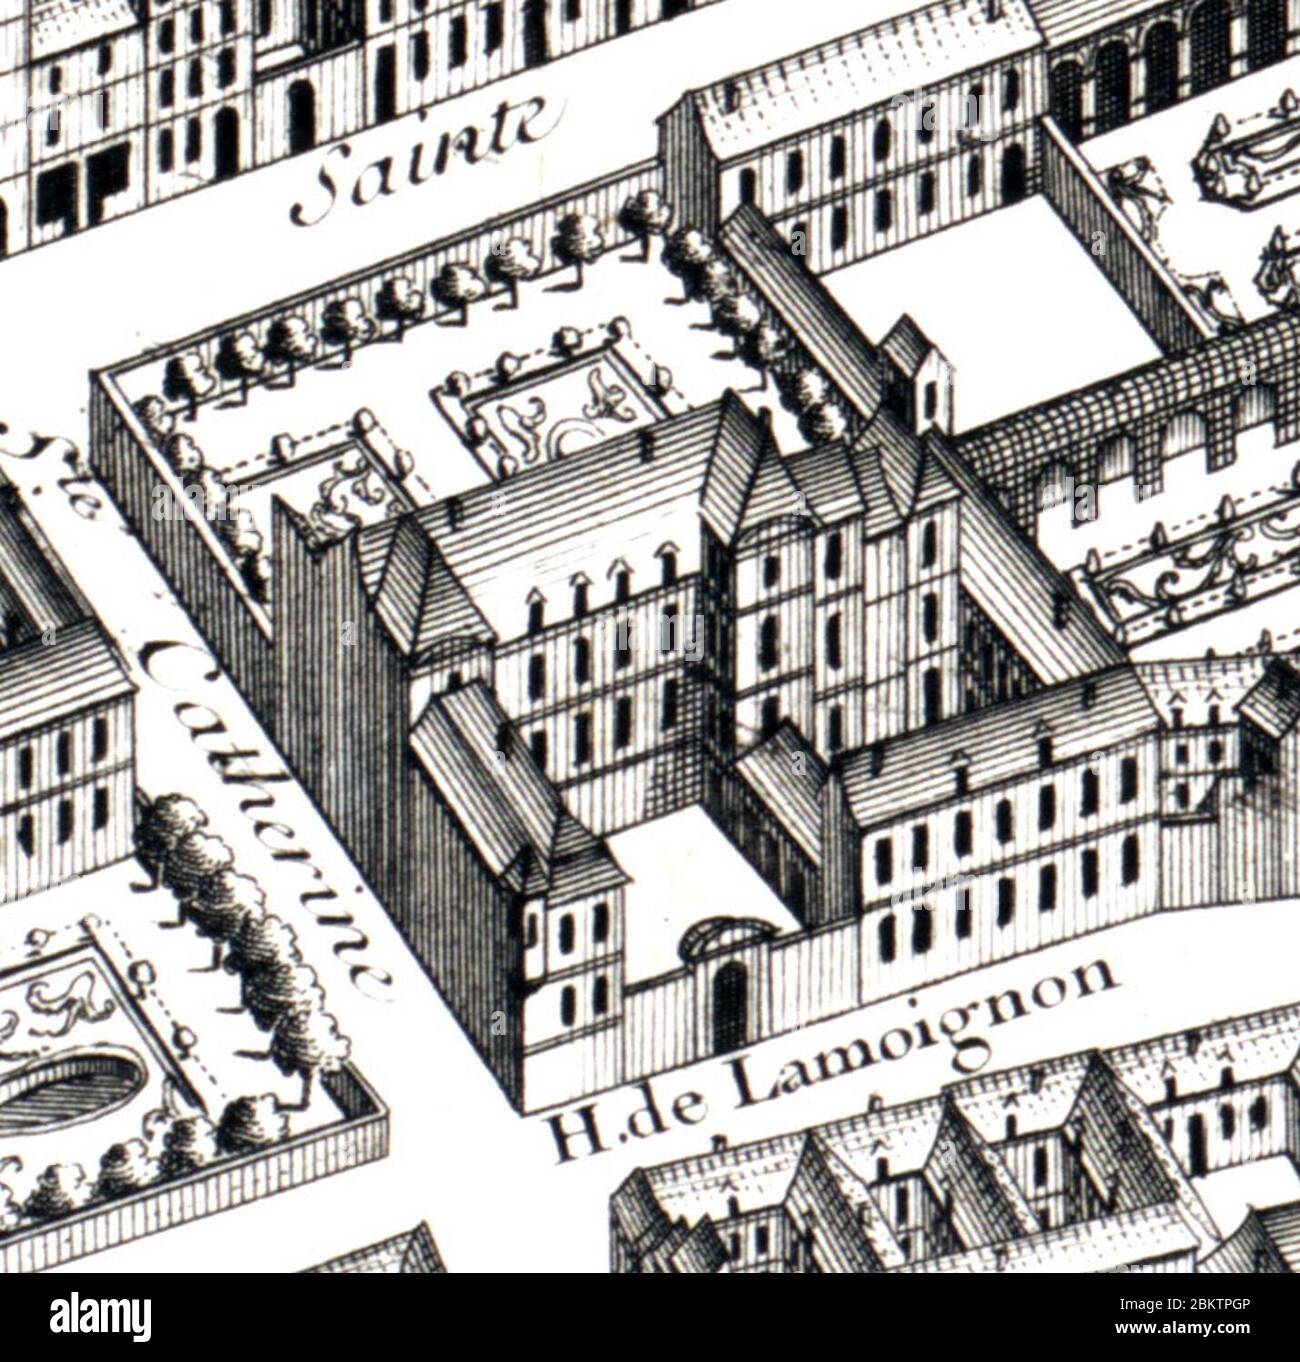 Hôtel de Lamoignon on the Turgot Map of Paris – Leventhal Map Center. Stock Photo